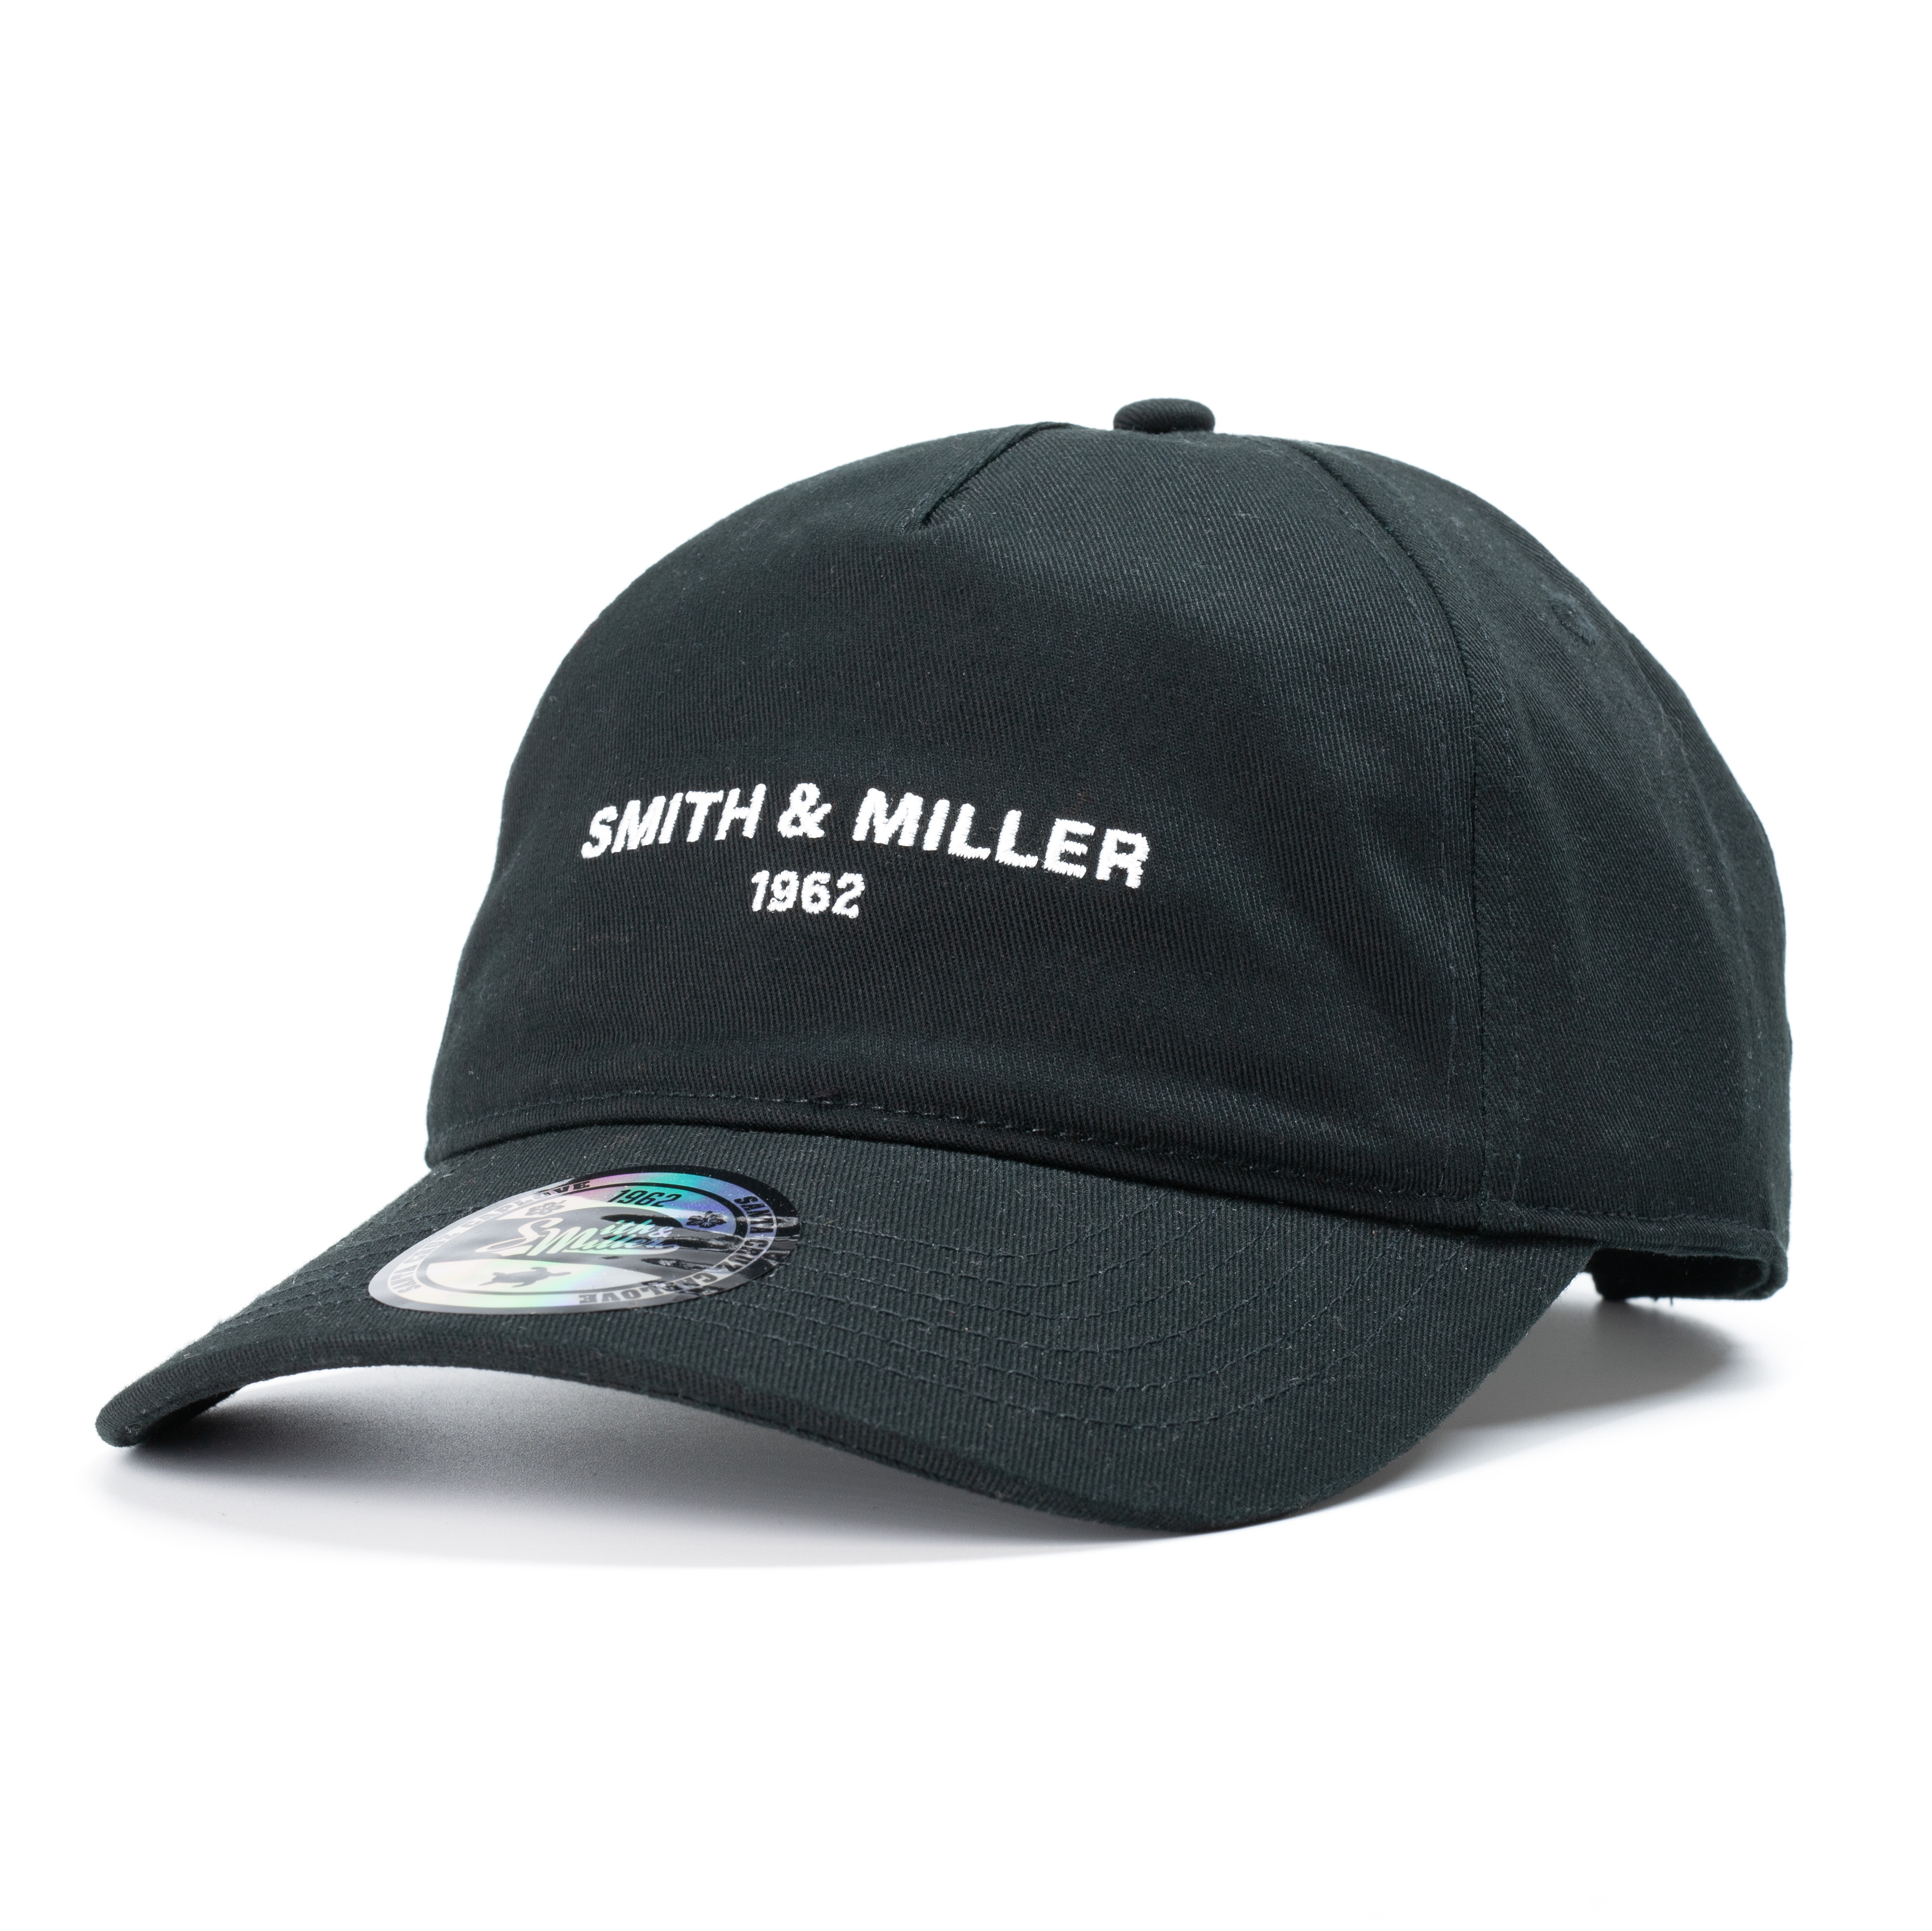 Smith & Miller Eden Unisex unstructured curved Cap, black